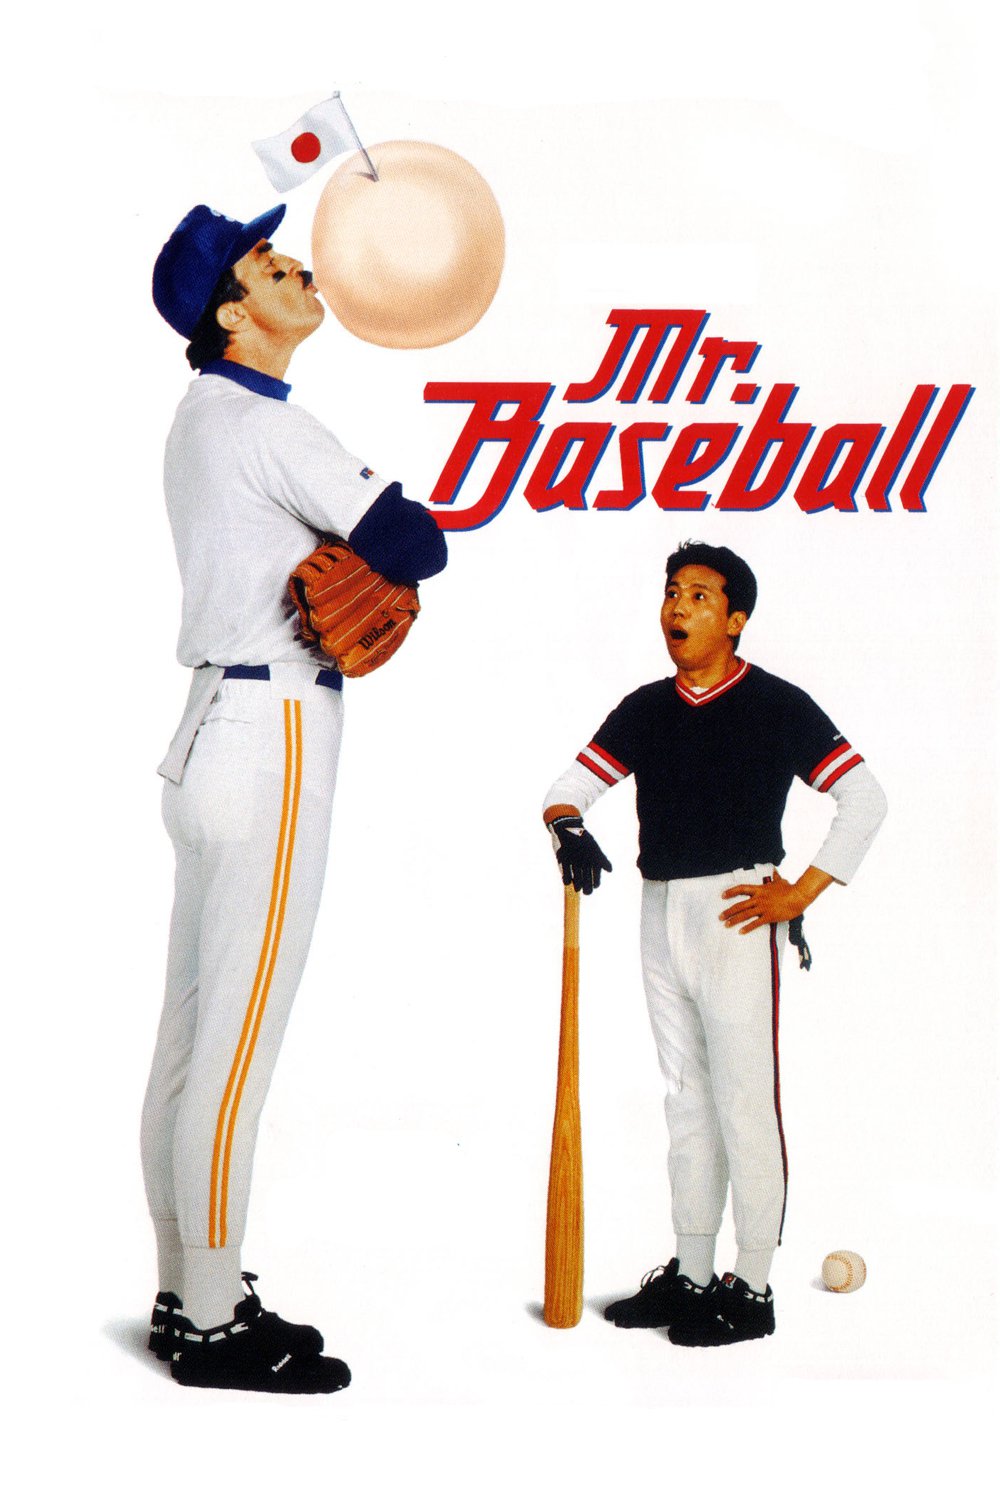 Plakat von "Mr. Baseball"